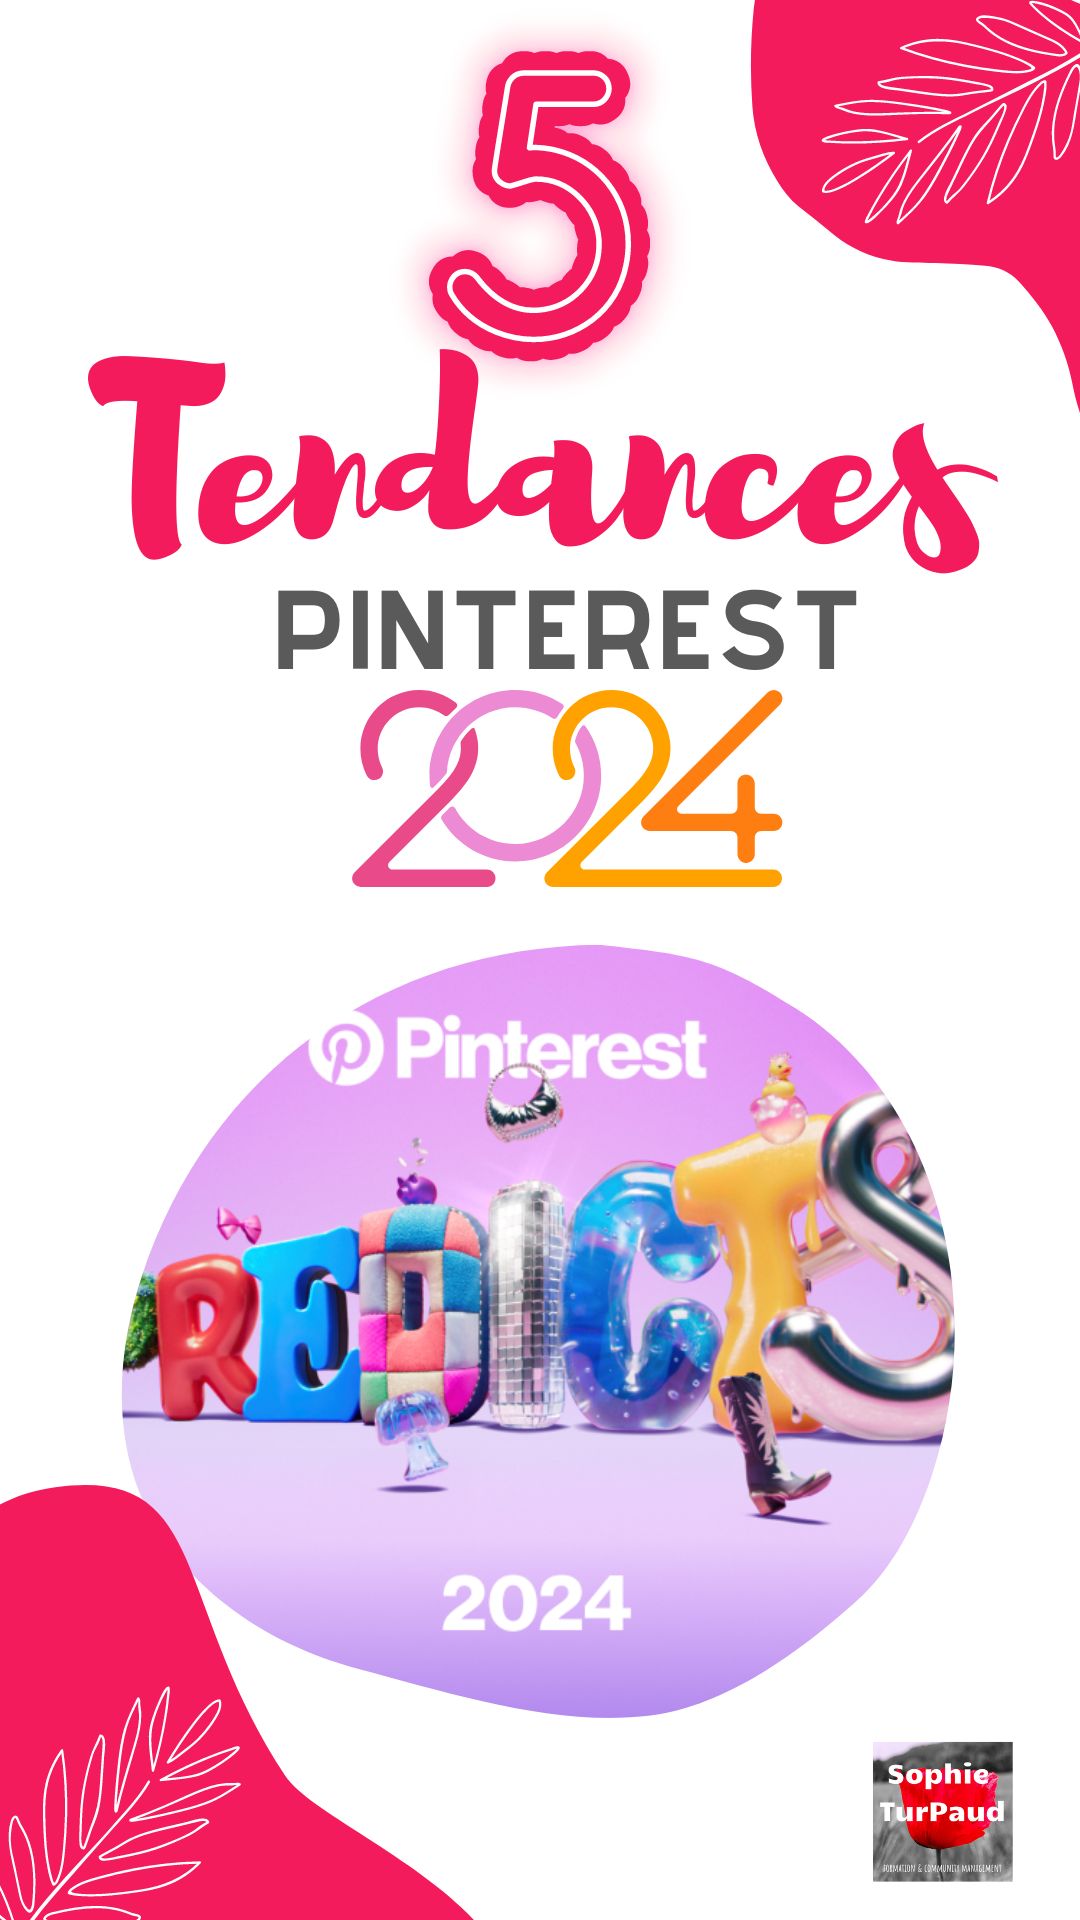 5 tendances Pinterest 2024